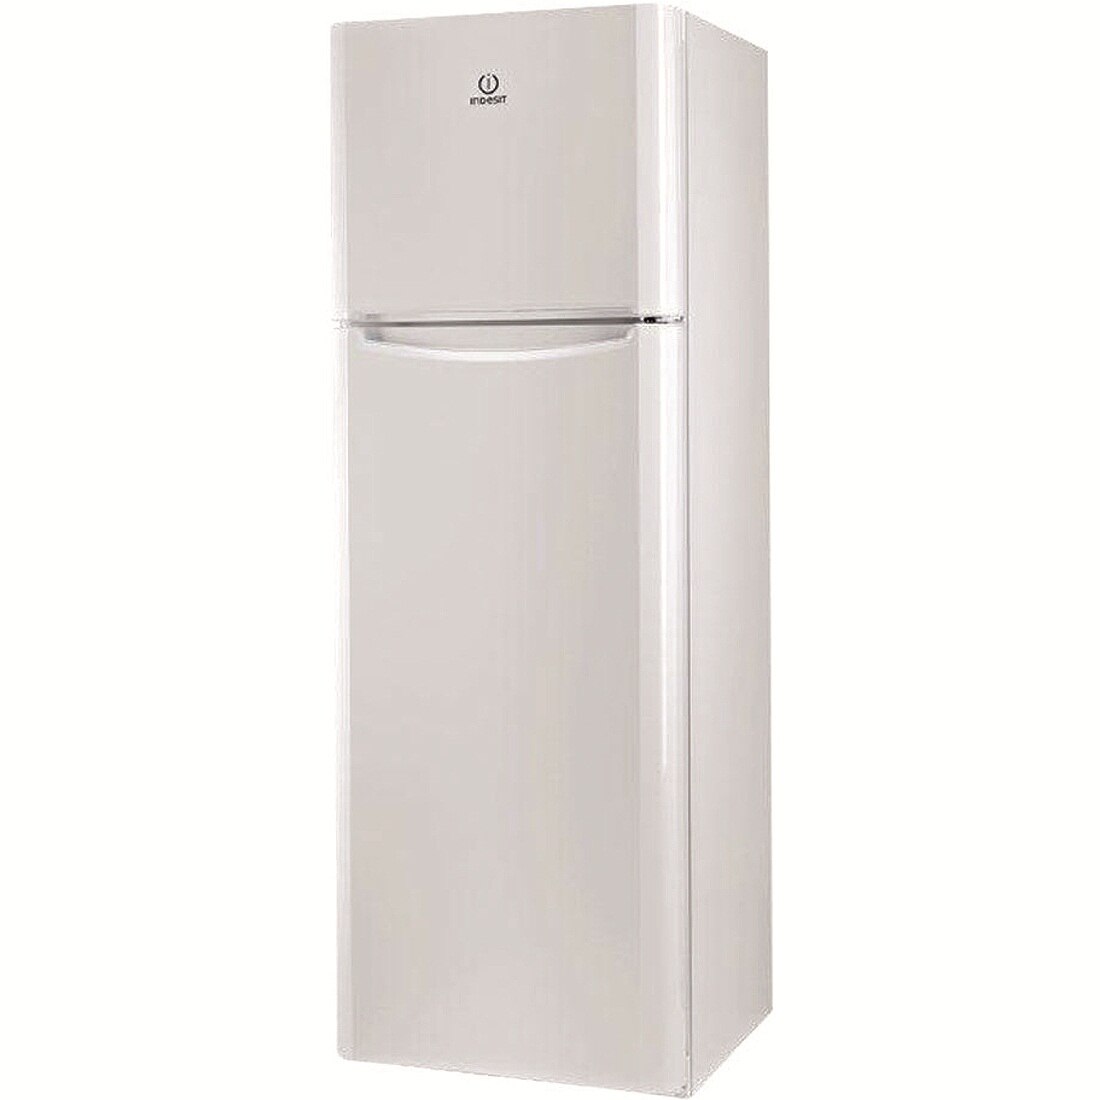 Хладилник Indesit TIAA12 с обем от 306 л.